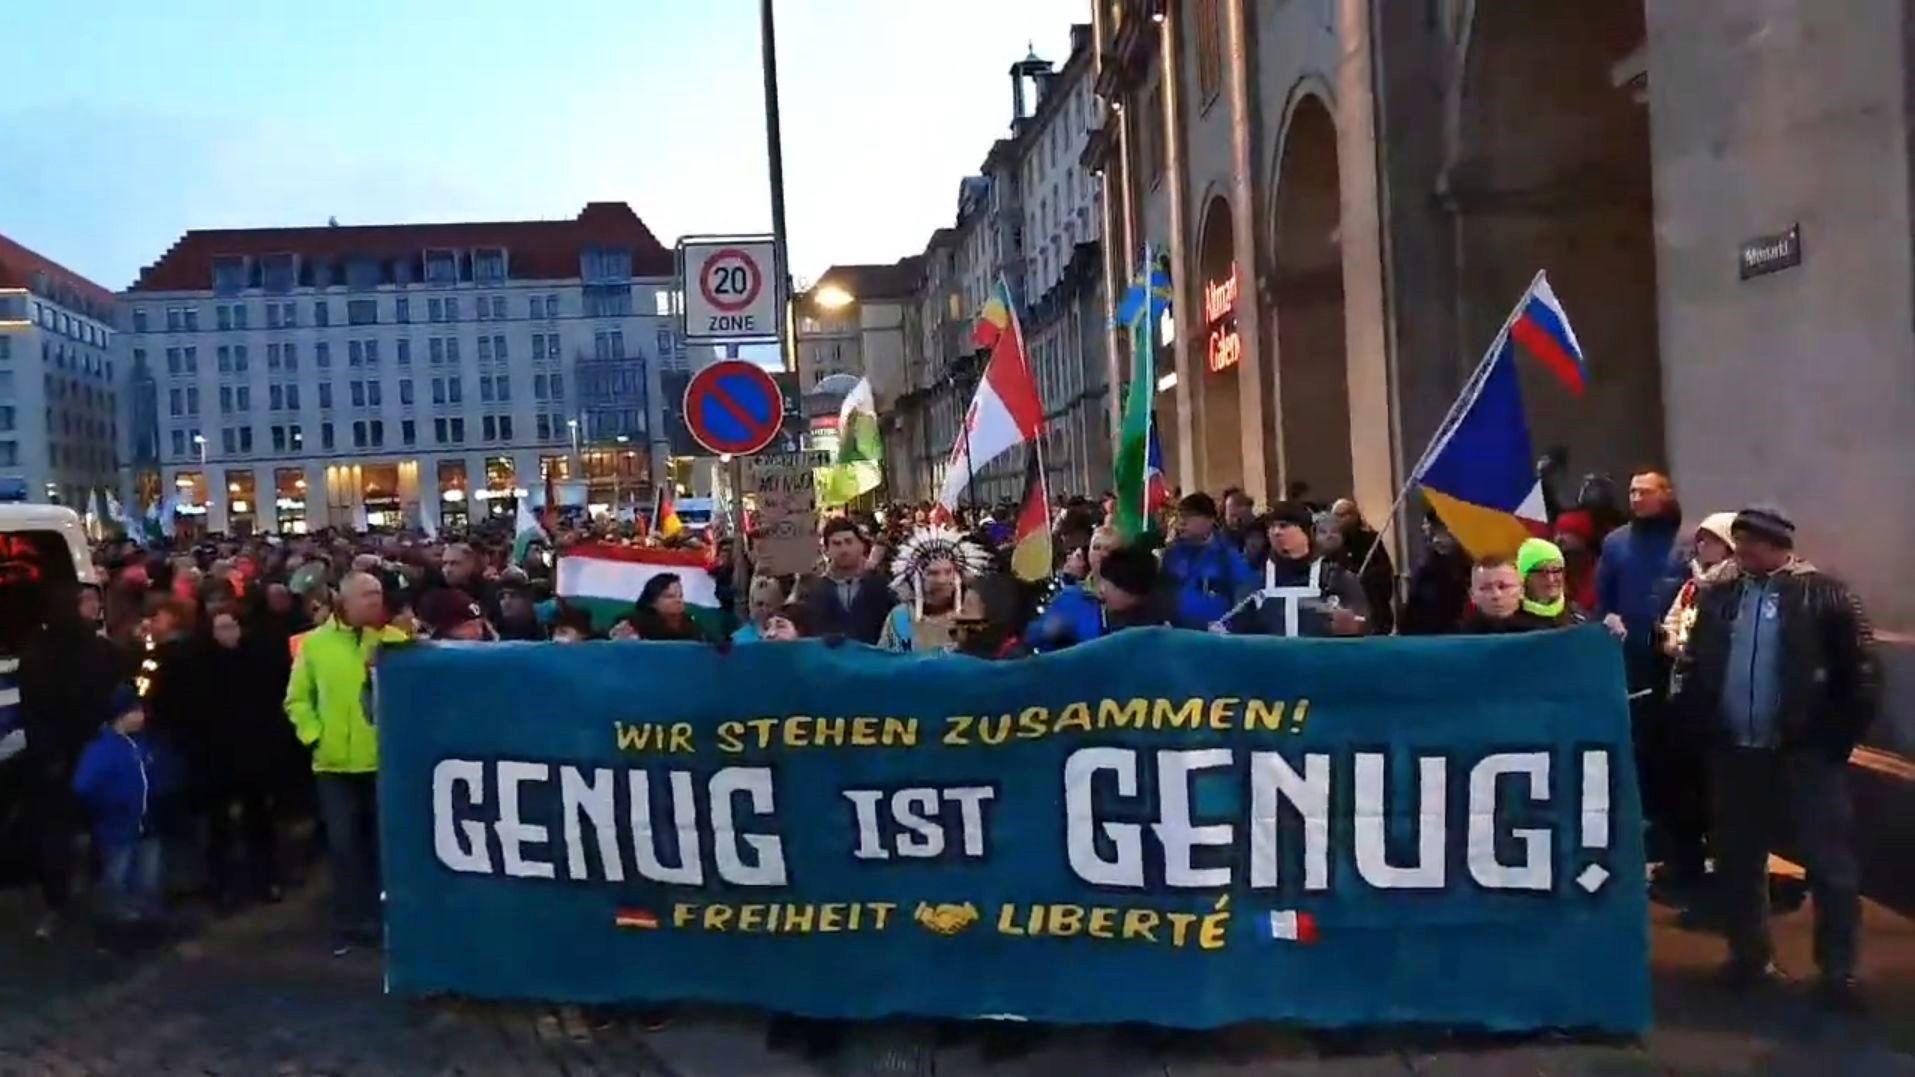 Banner mit der Aufschrift "Genug ist genug!" und Trommler kurz vor Beginn des Aufzugs auf dem Altmarkt